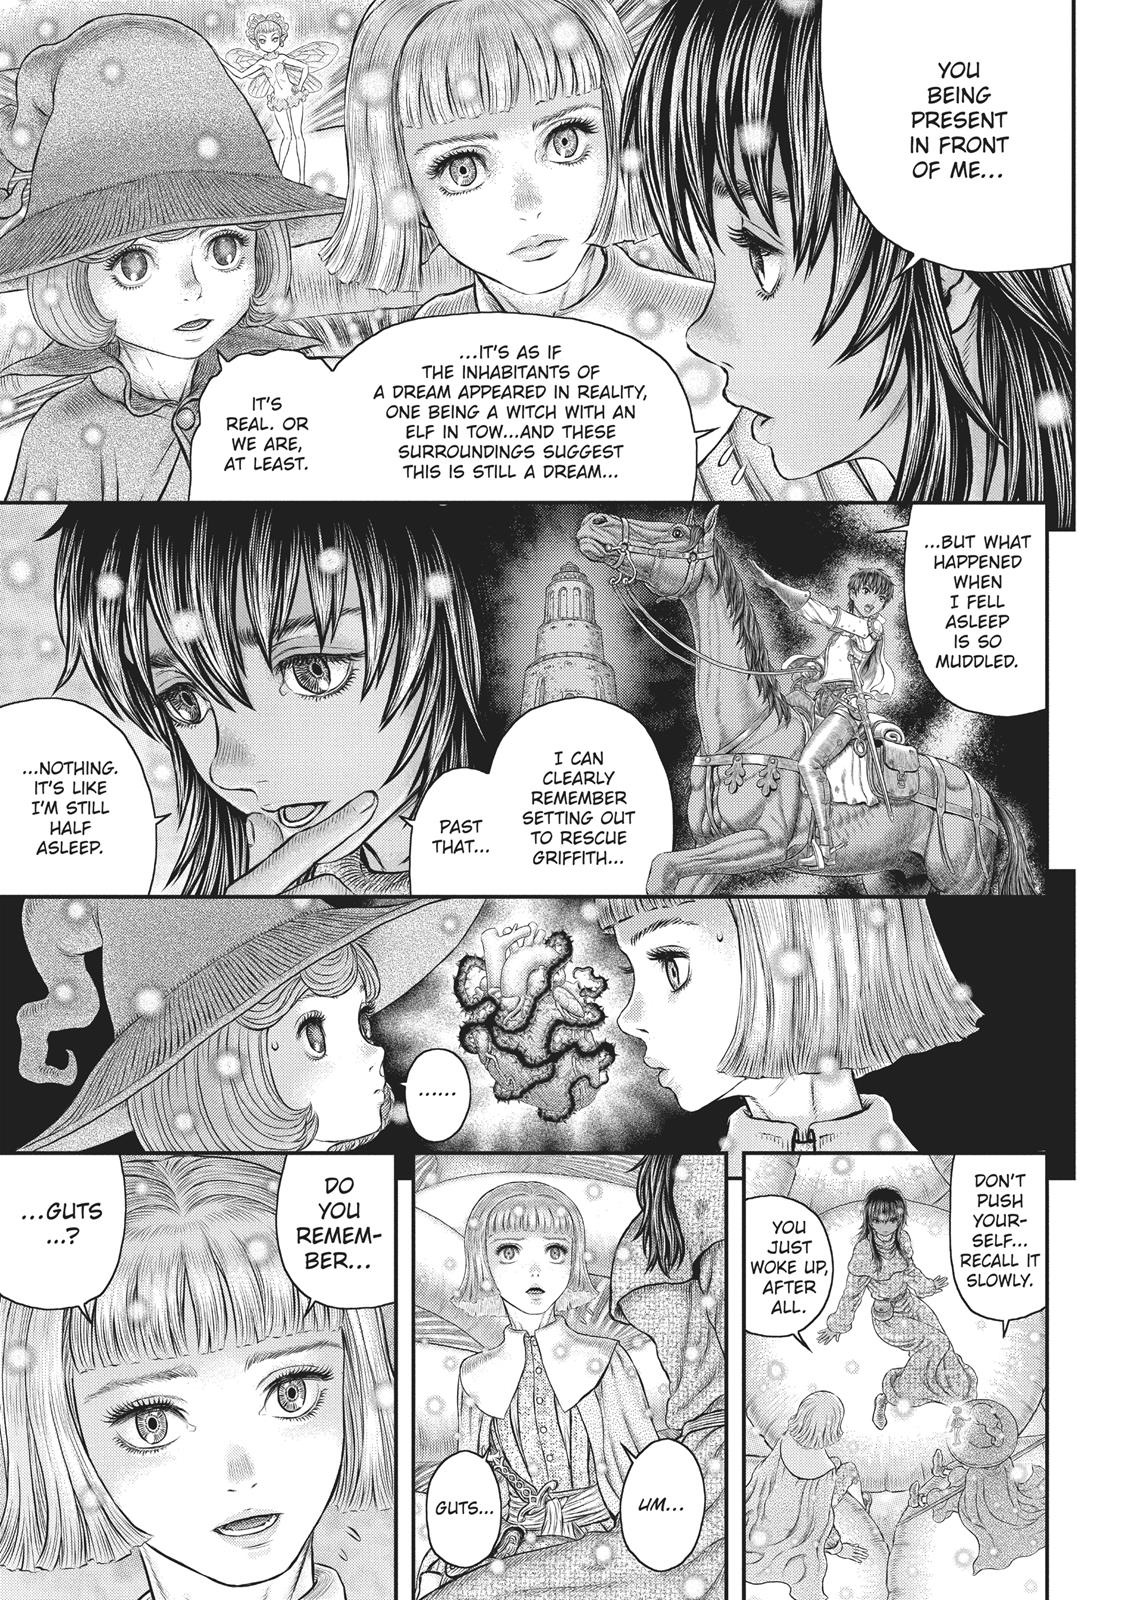 Berserk Manga Chapter 355 image 07